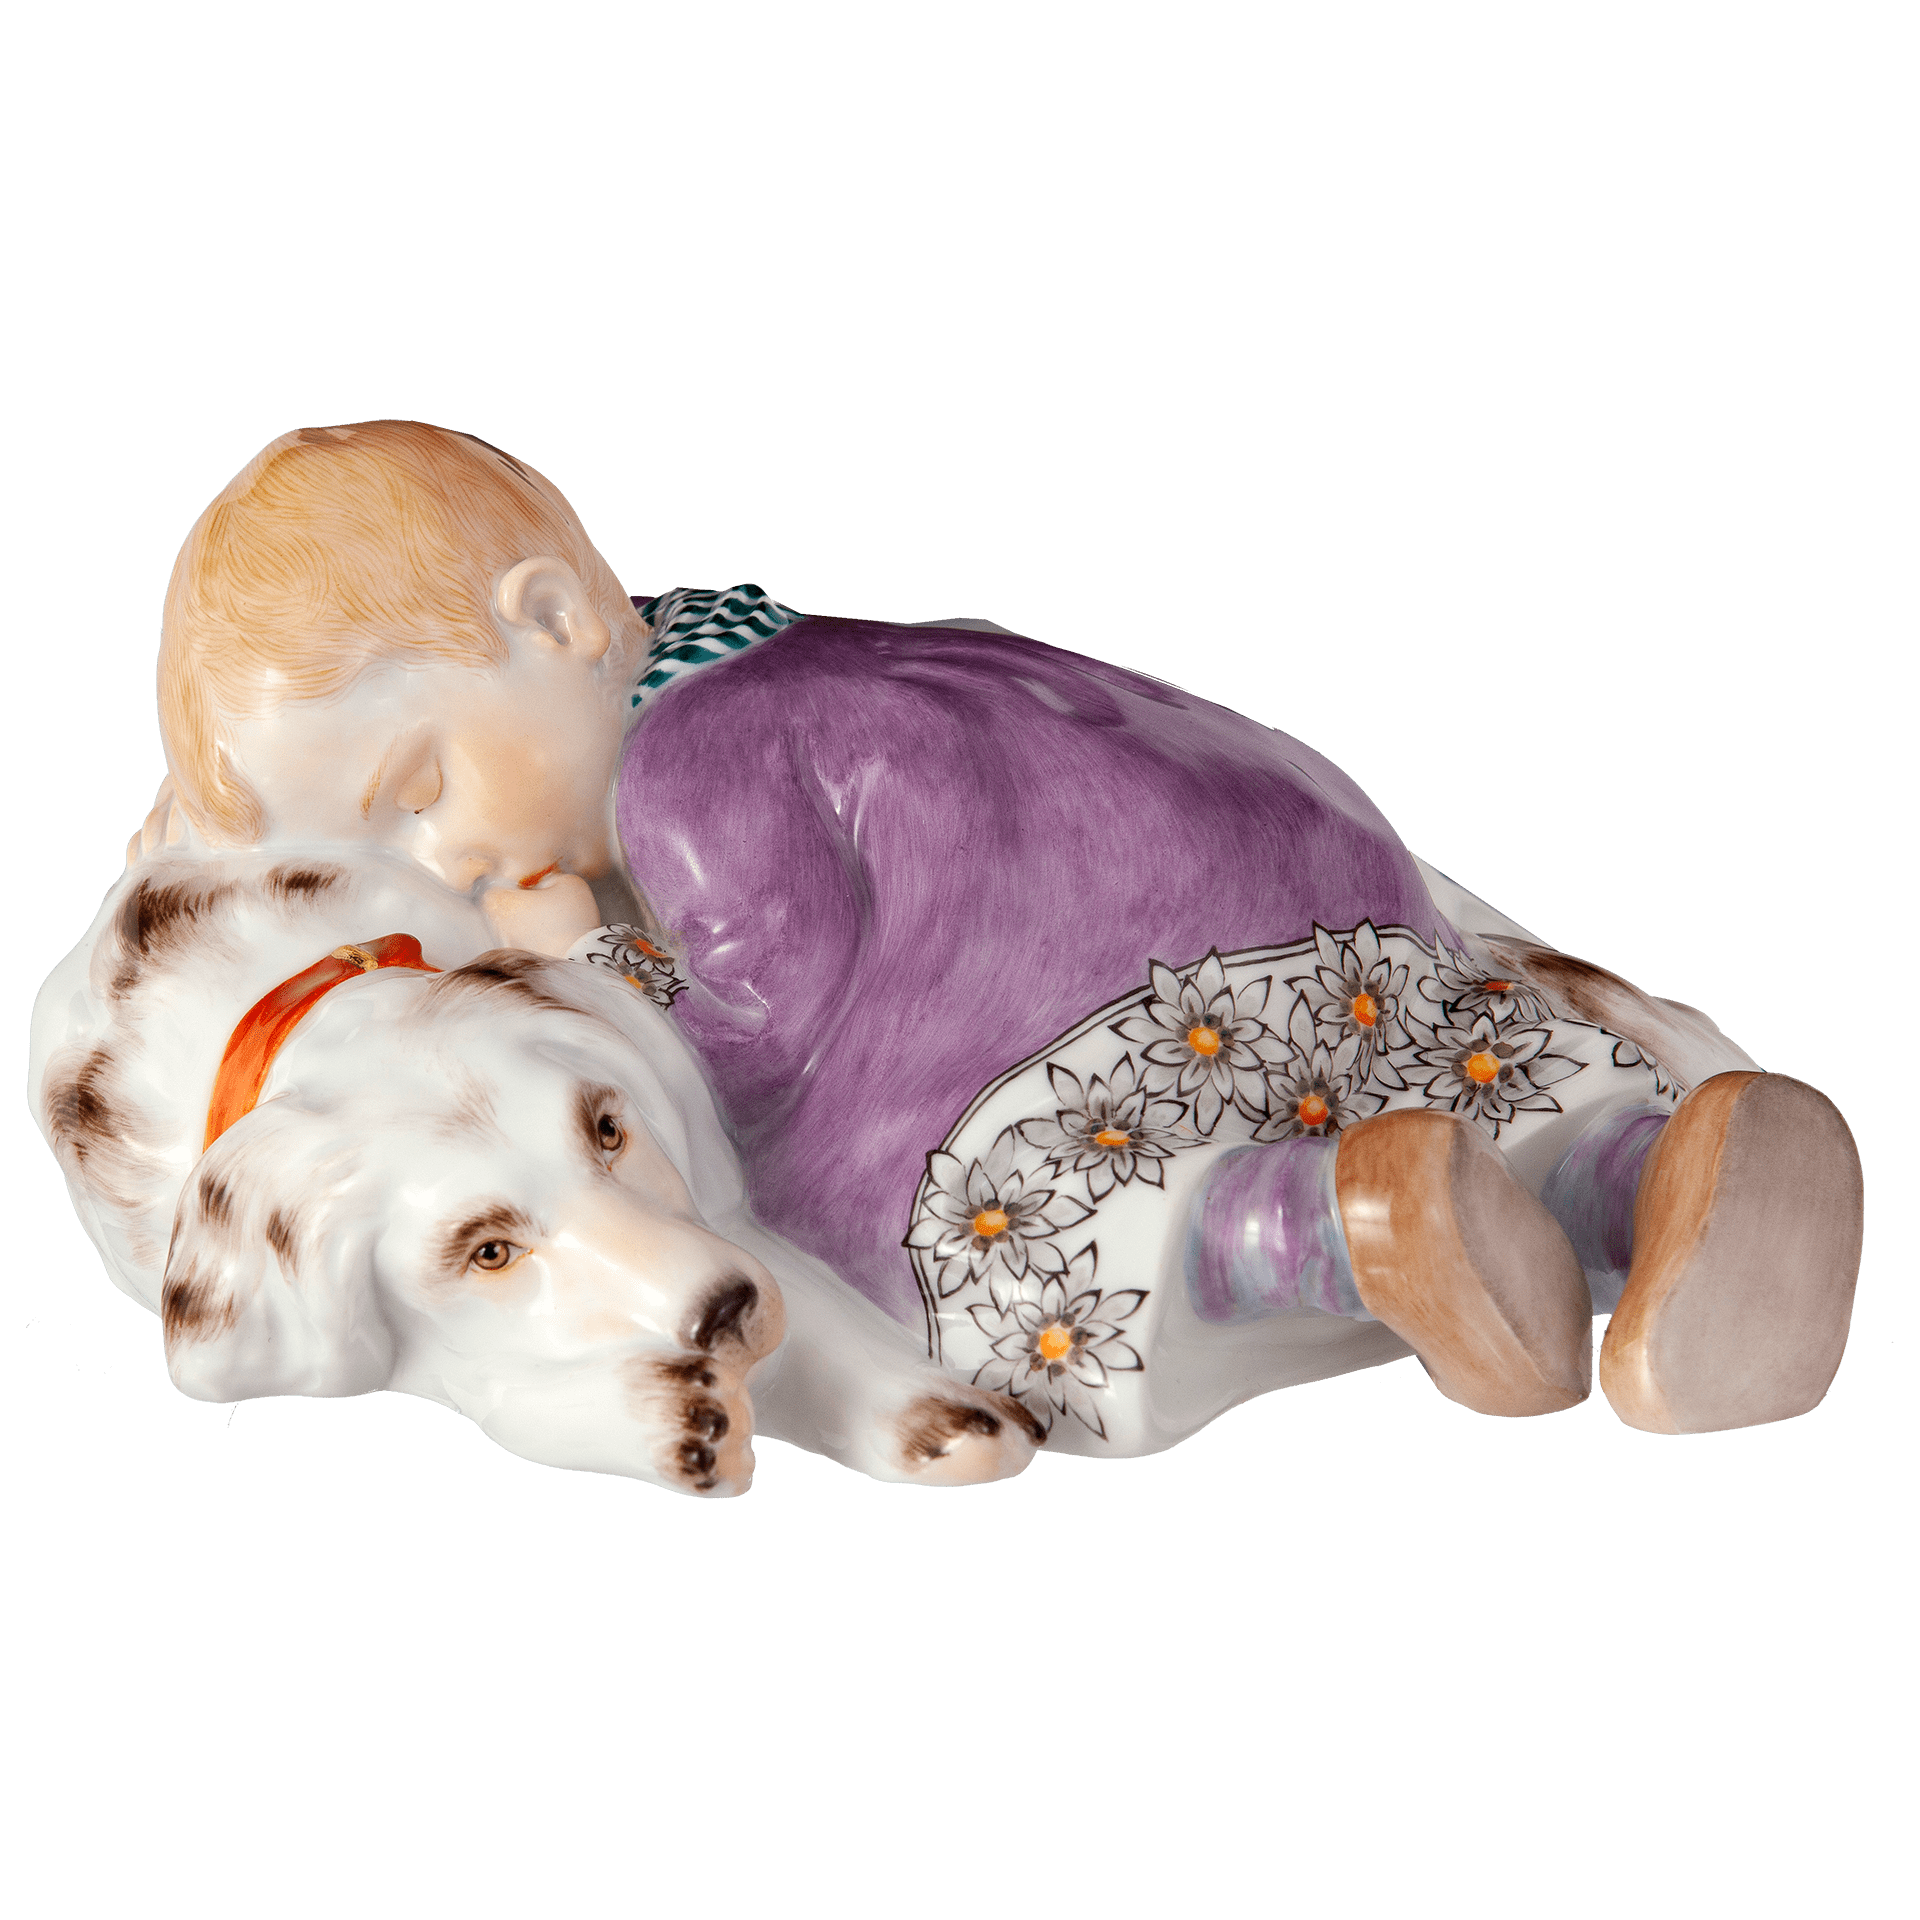 ドイツの名窯マイセン 日本公式サイト|人形「眠る子供と犬」